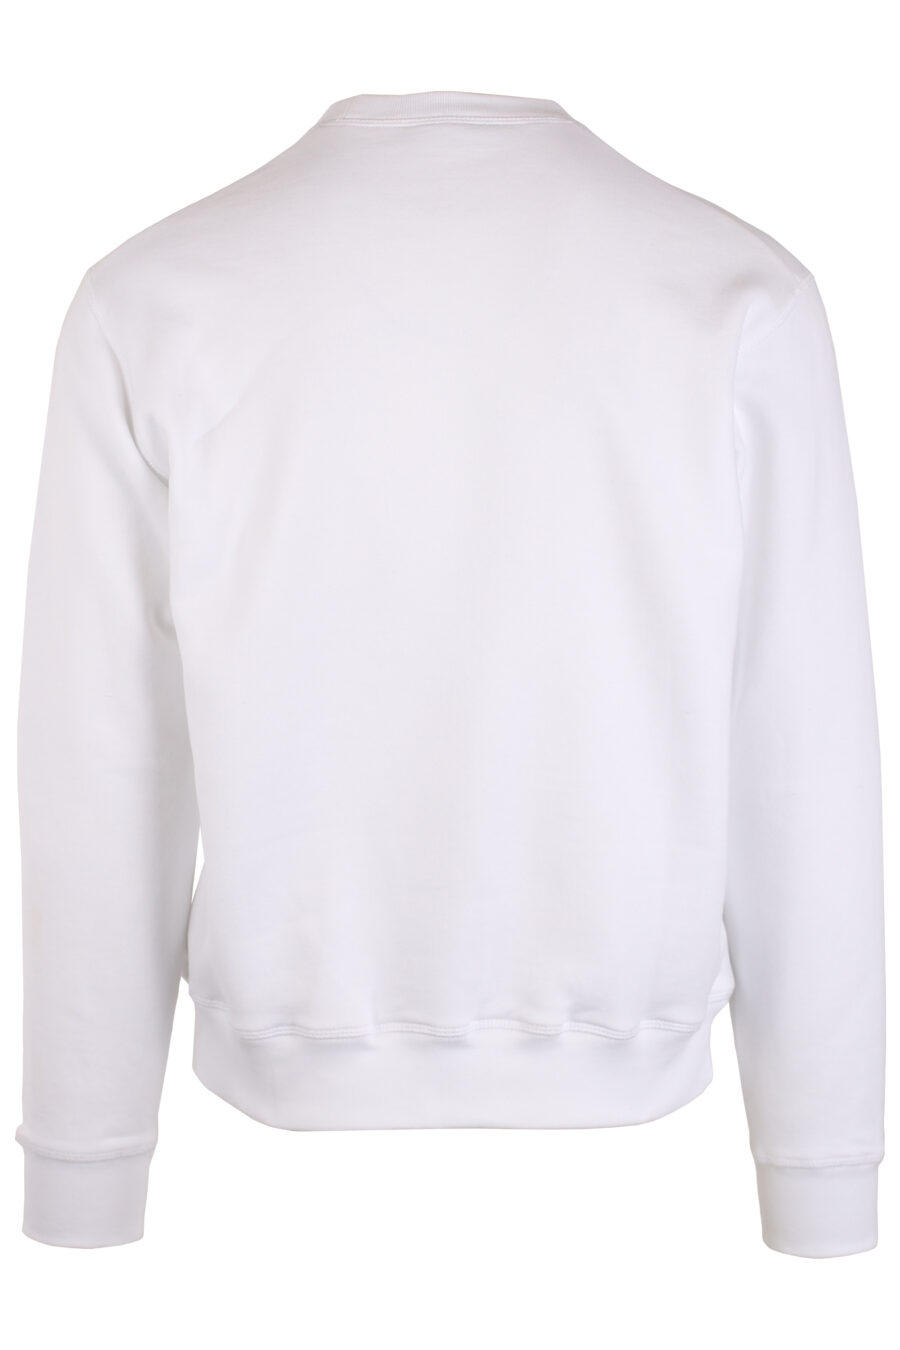 Weißes Sweatshirt "zurück auf dem Planeten" - IMG 4047